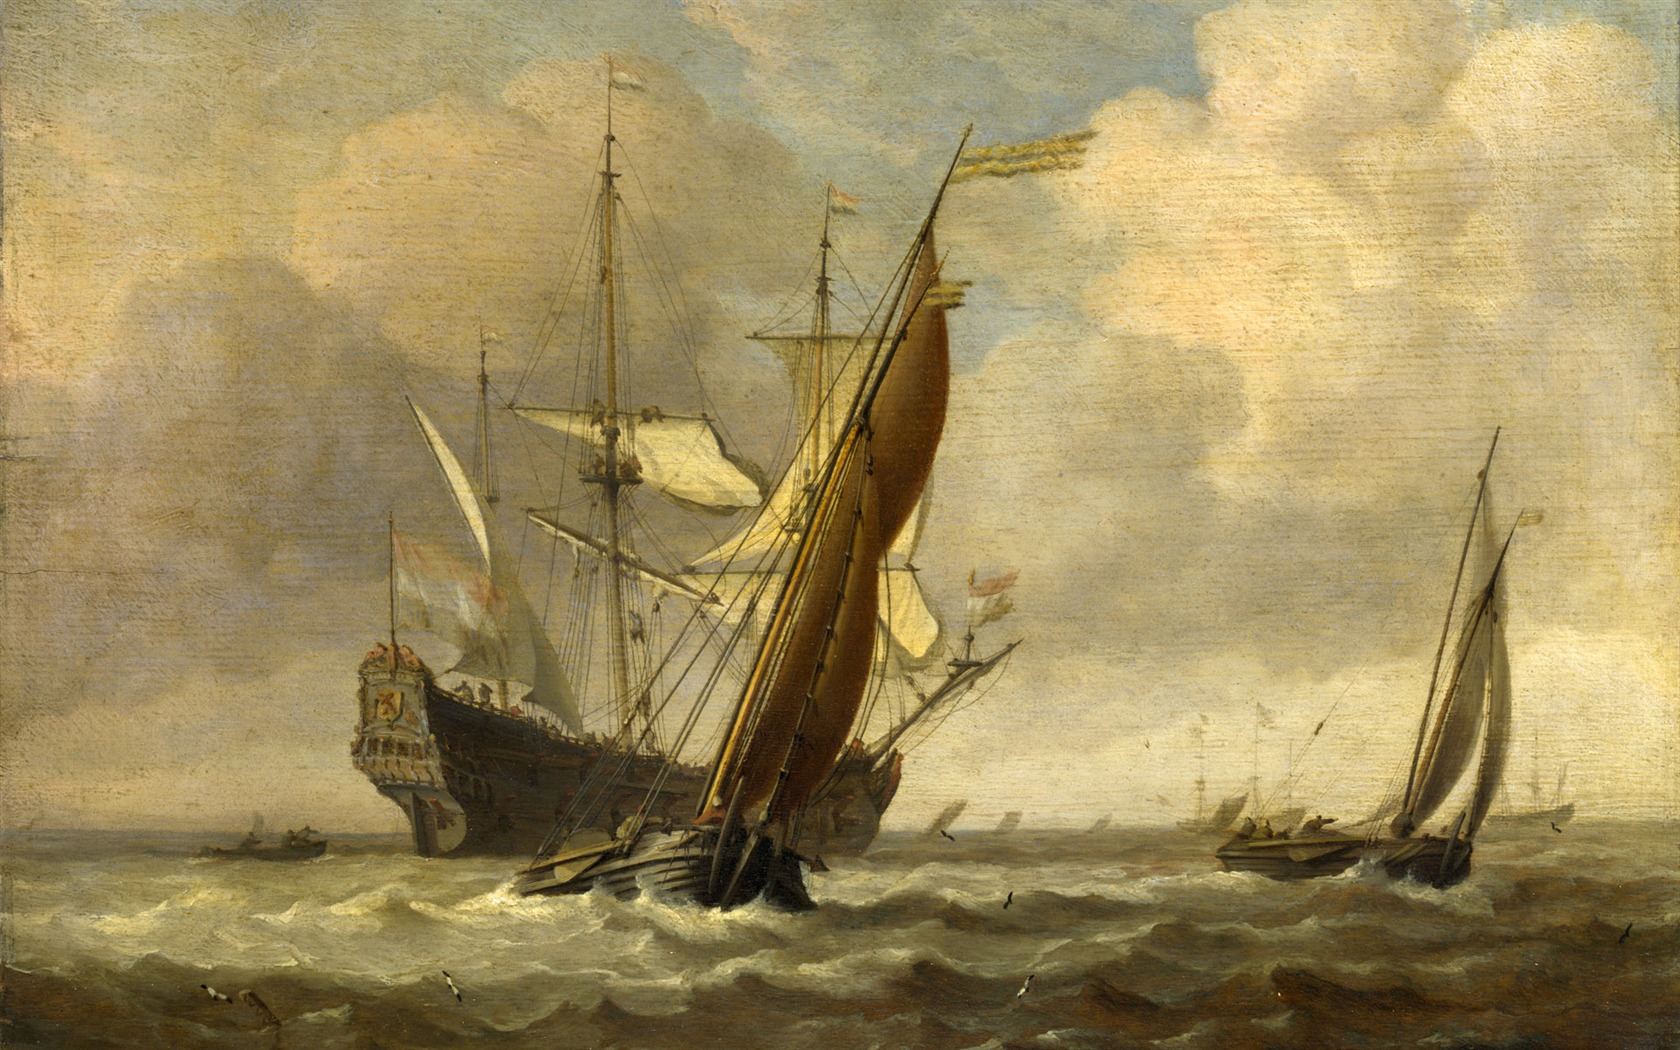 伦敦画廊帆船 壁纸(二)19 - 1680x1050